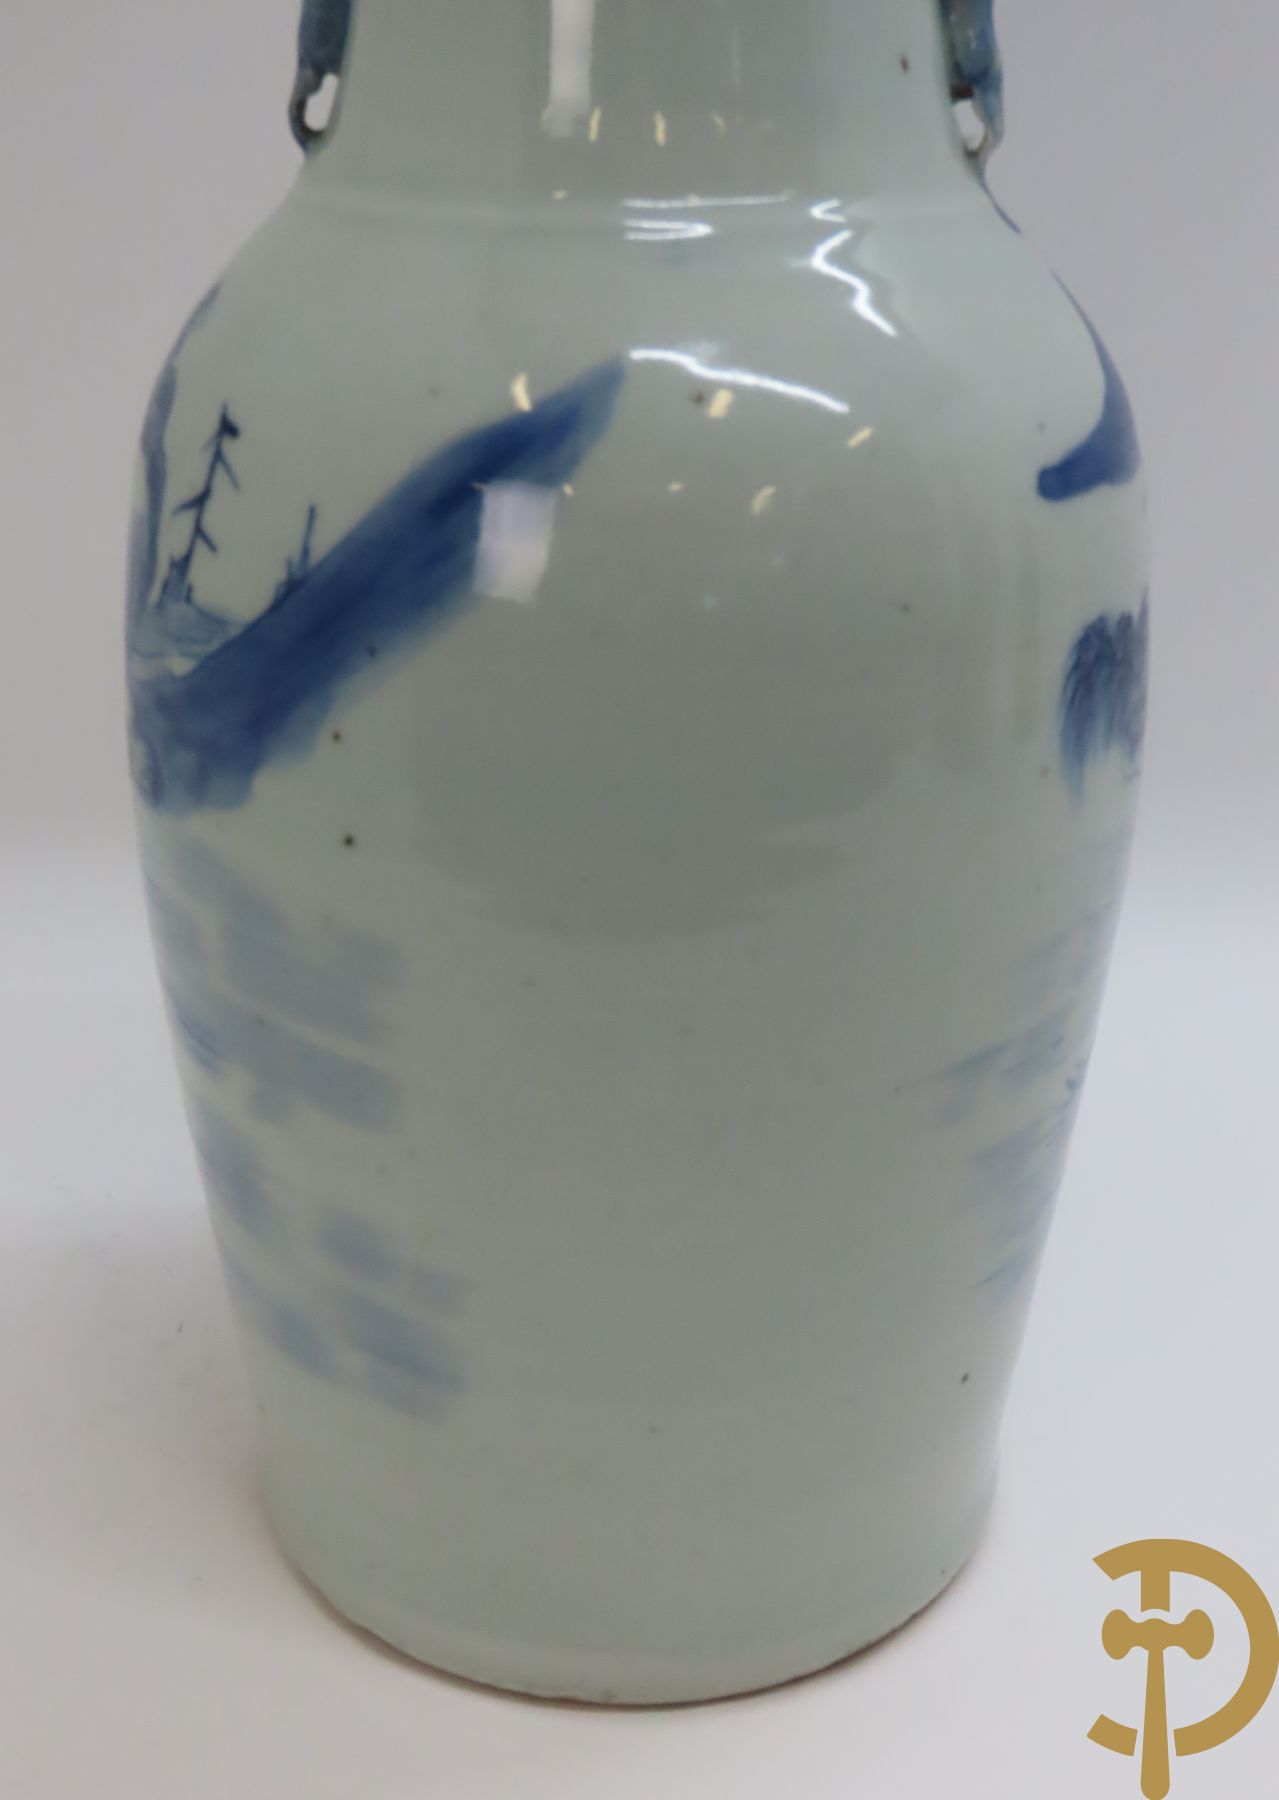 Chinese porseleinen vaas met geanimeerd blauw/wit landschapsdecor en huizenzicht